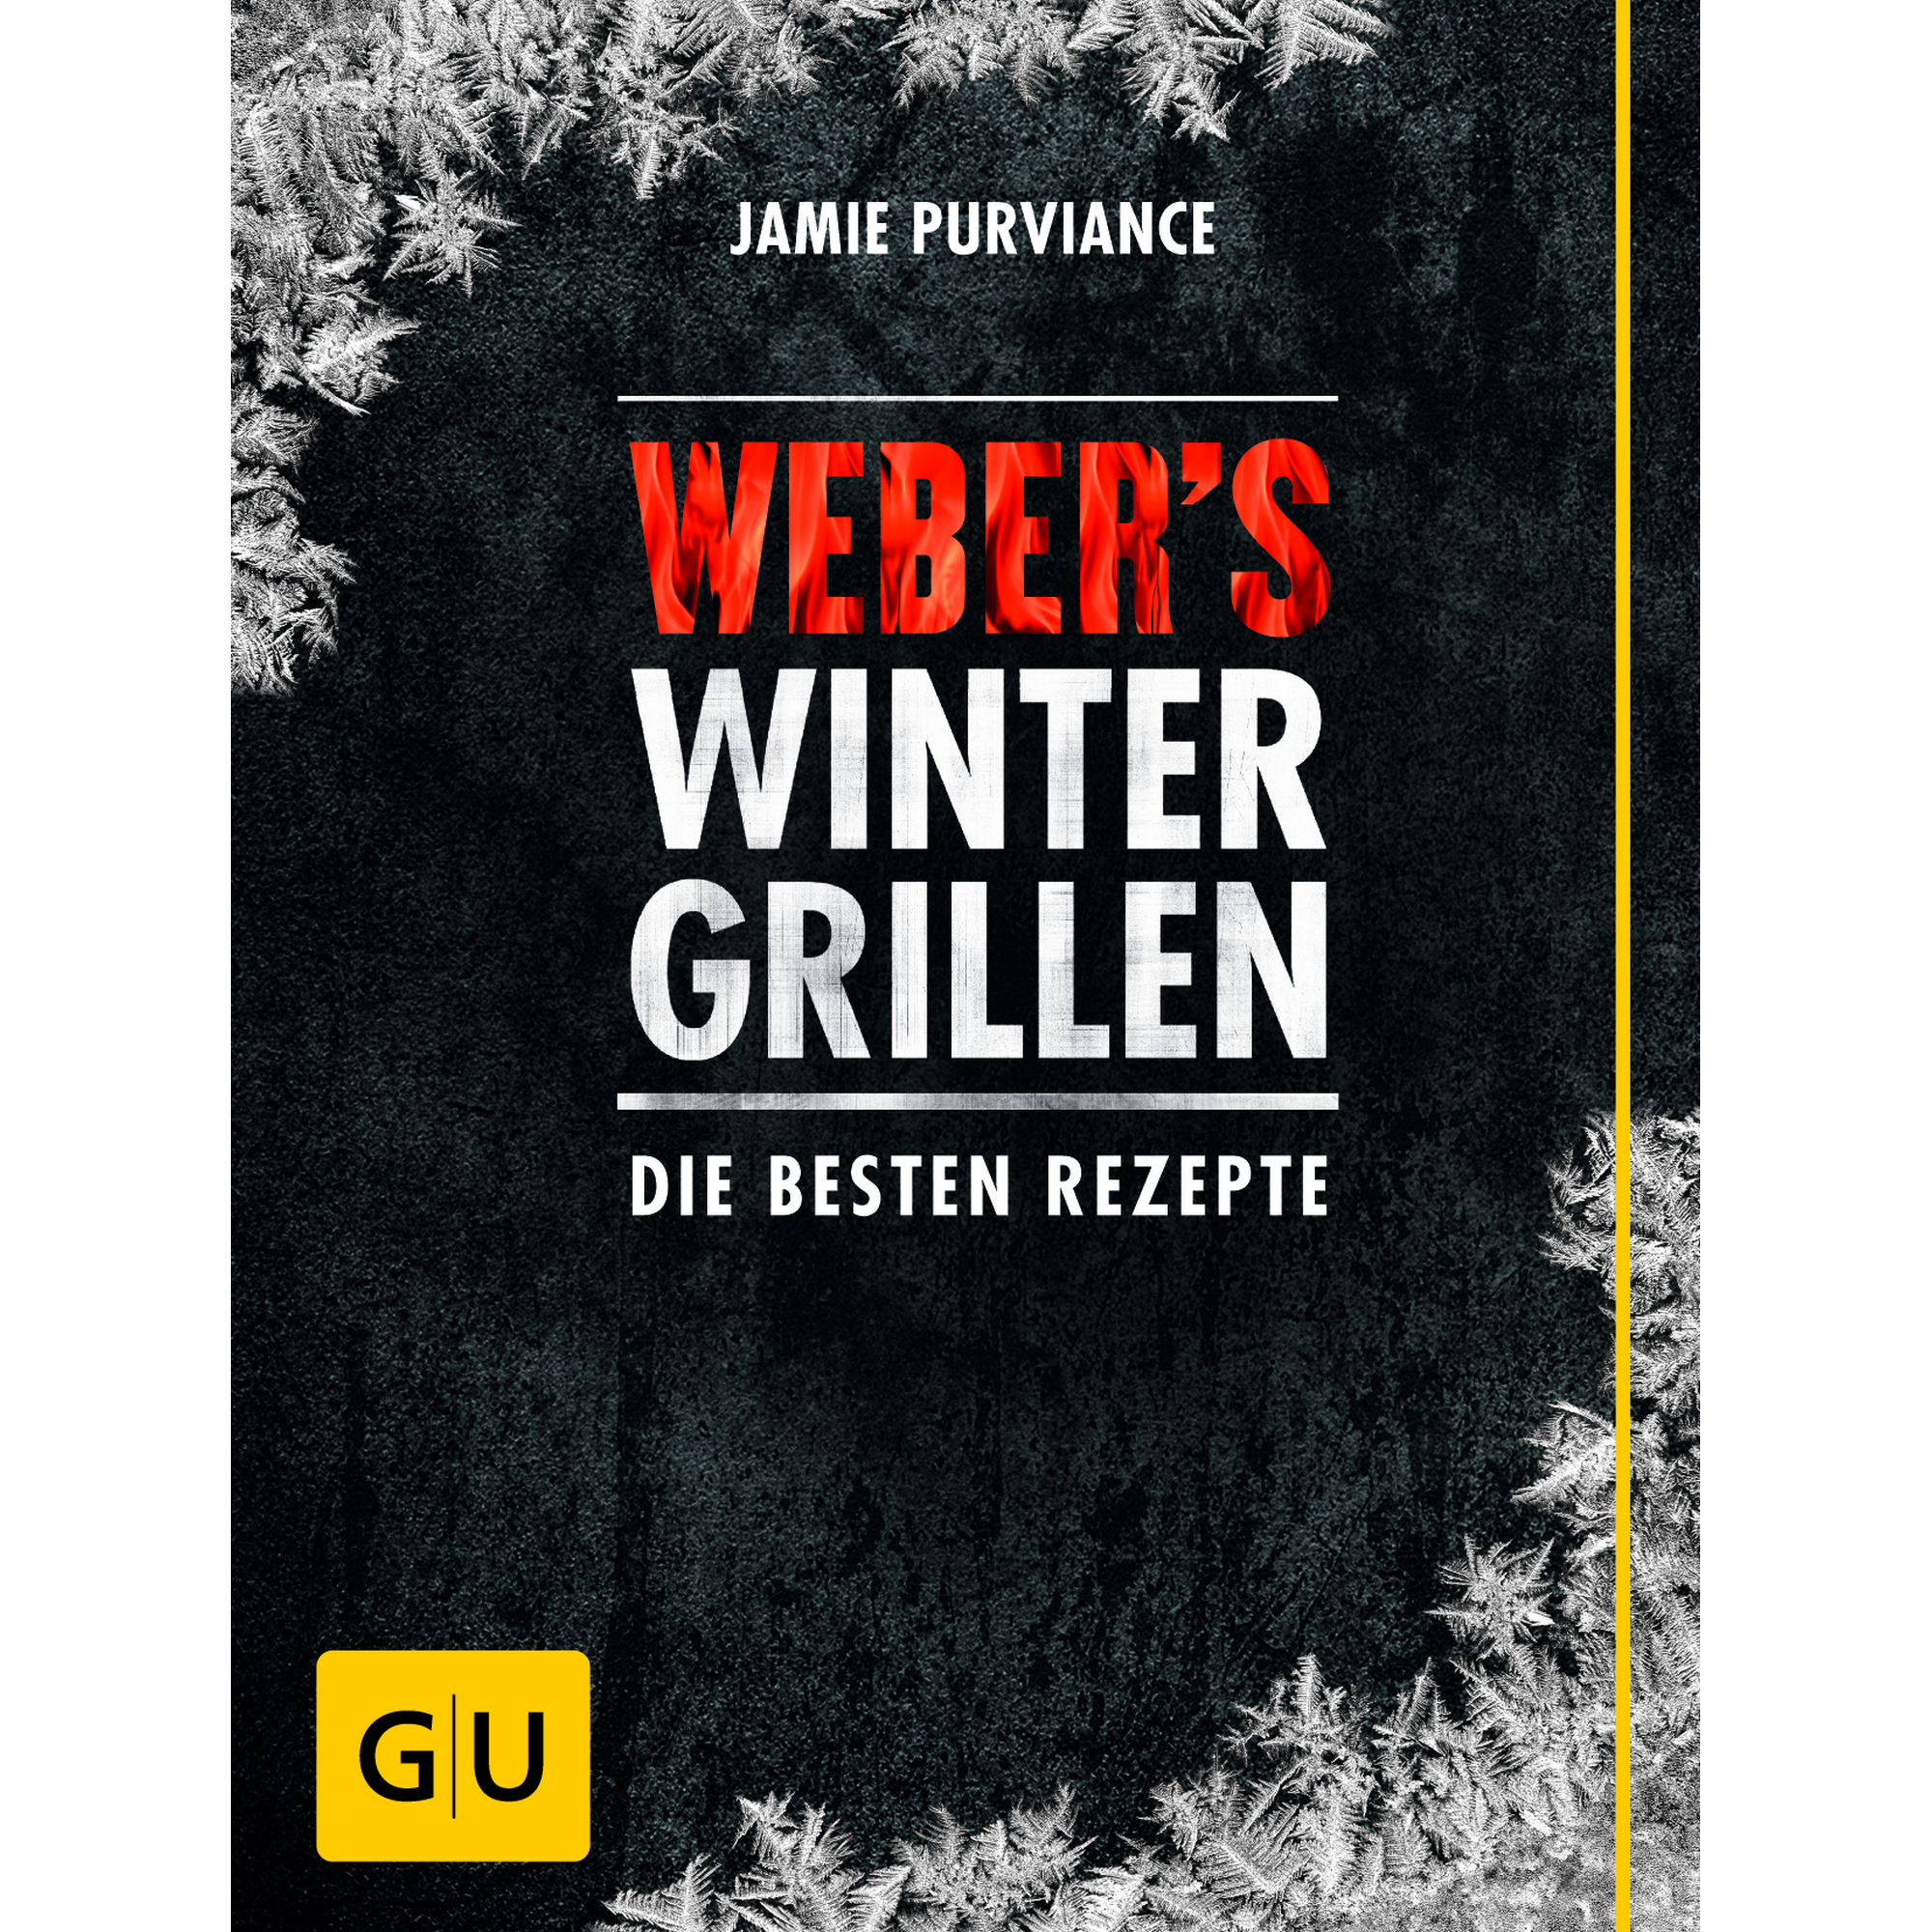 Grillbuch Jamie Purviance 'Weber's Wintergrillen: Die besten Rezepte' + product picture